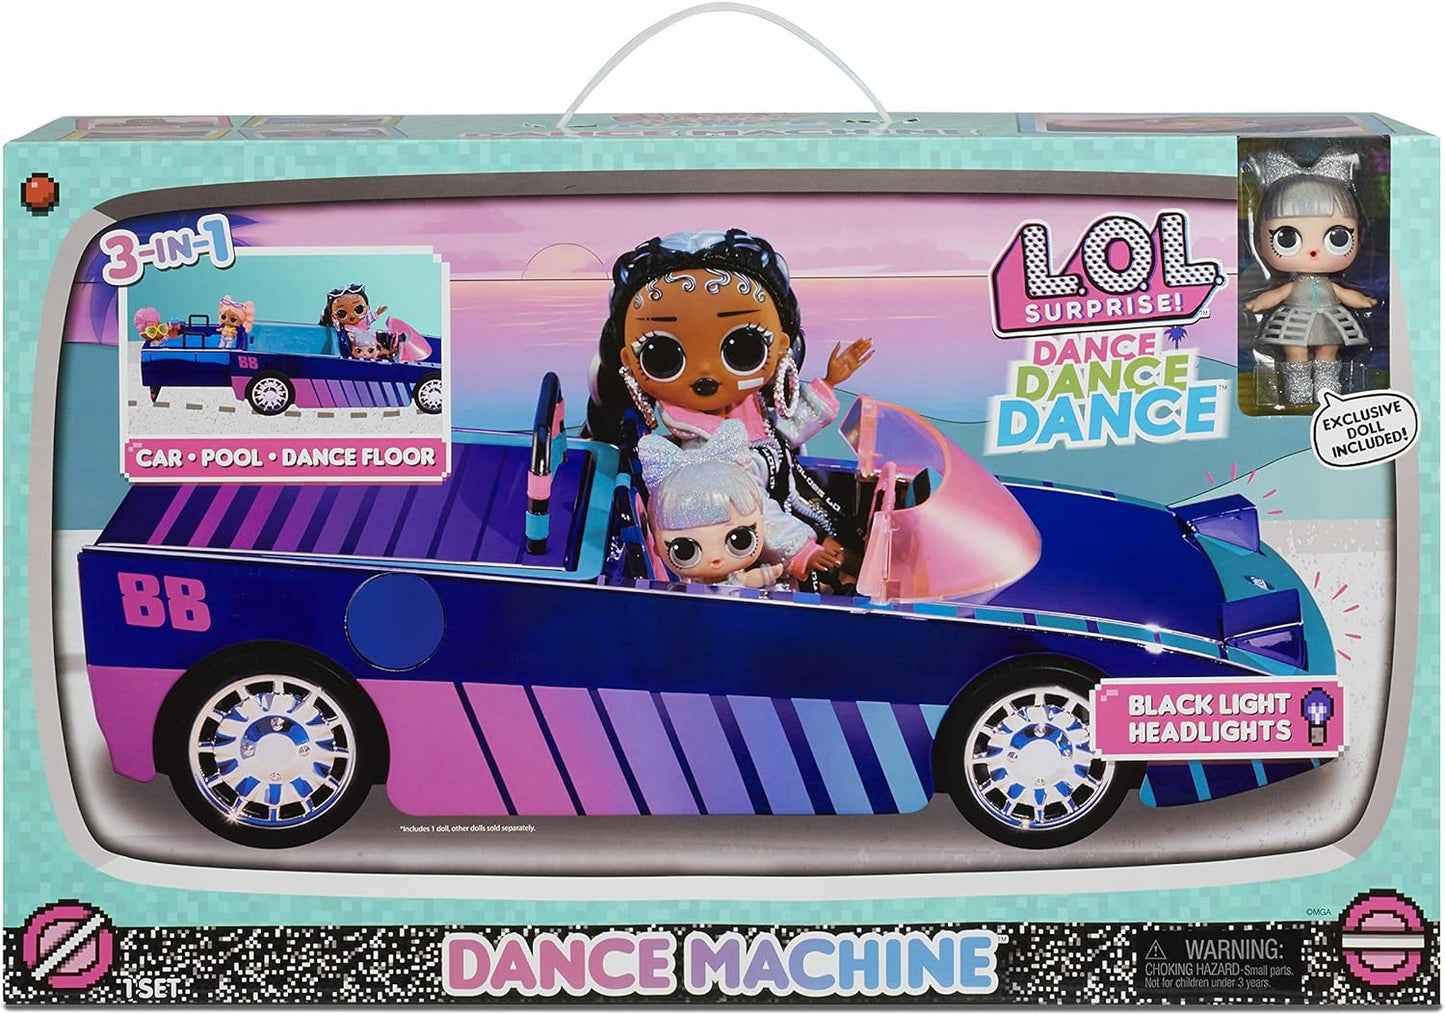 L.O.L. Surprise City Cruiser - Carro esportivo rosa e roxo com recursos fabulosos e uma boneca exclusiva BEEPS - Ótimo para crianças de 4 anos ou mais